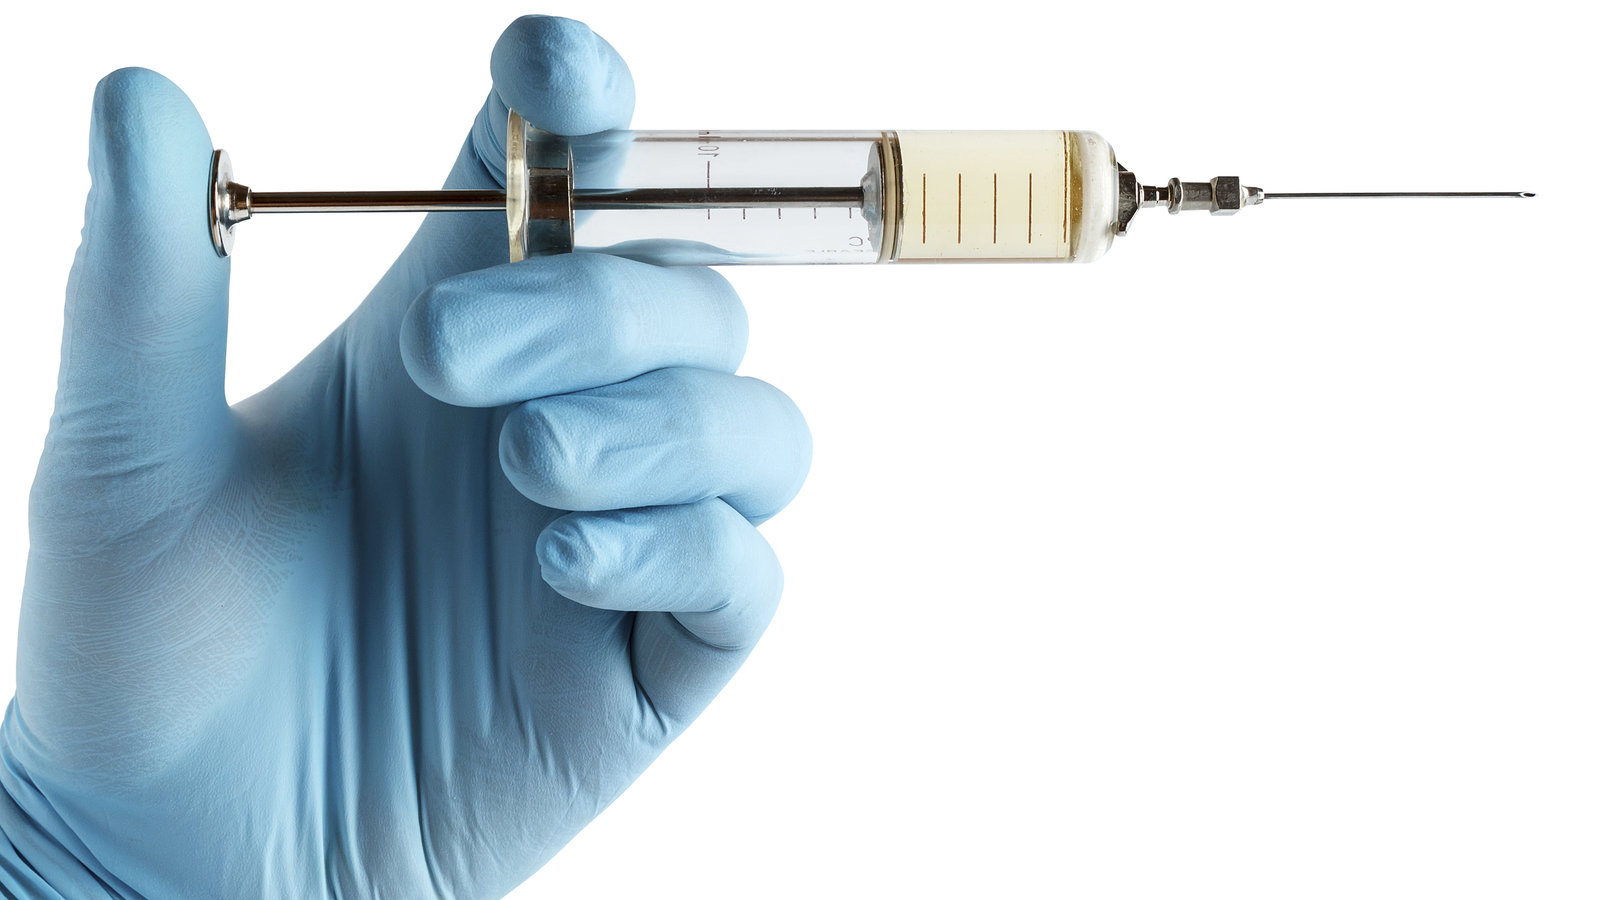 Les vaccins Moderna et Pfizer COVID sont contaminés par des fragments d’ADN plasmidique selon le Dr Malone